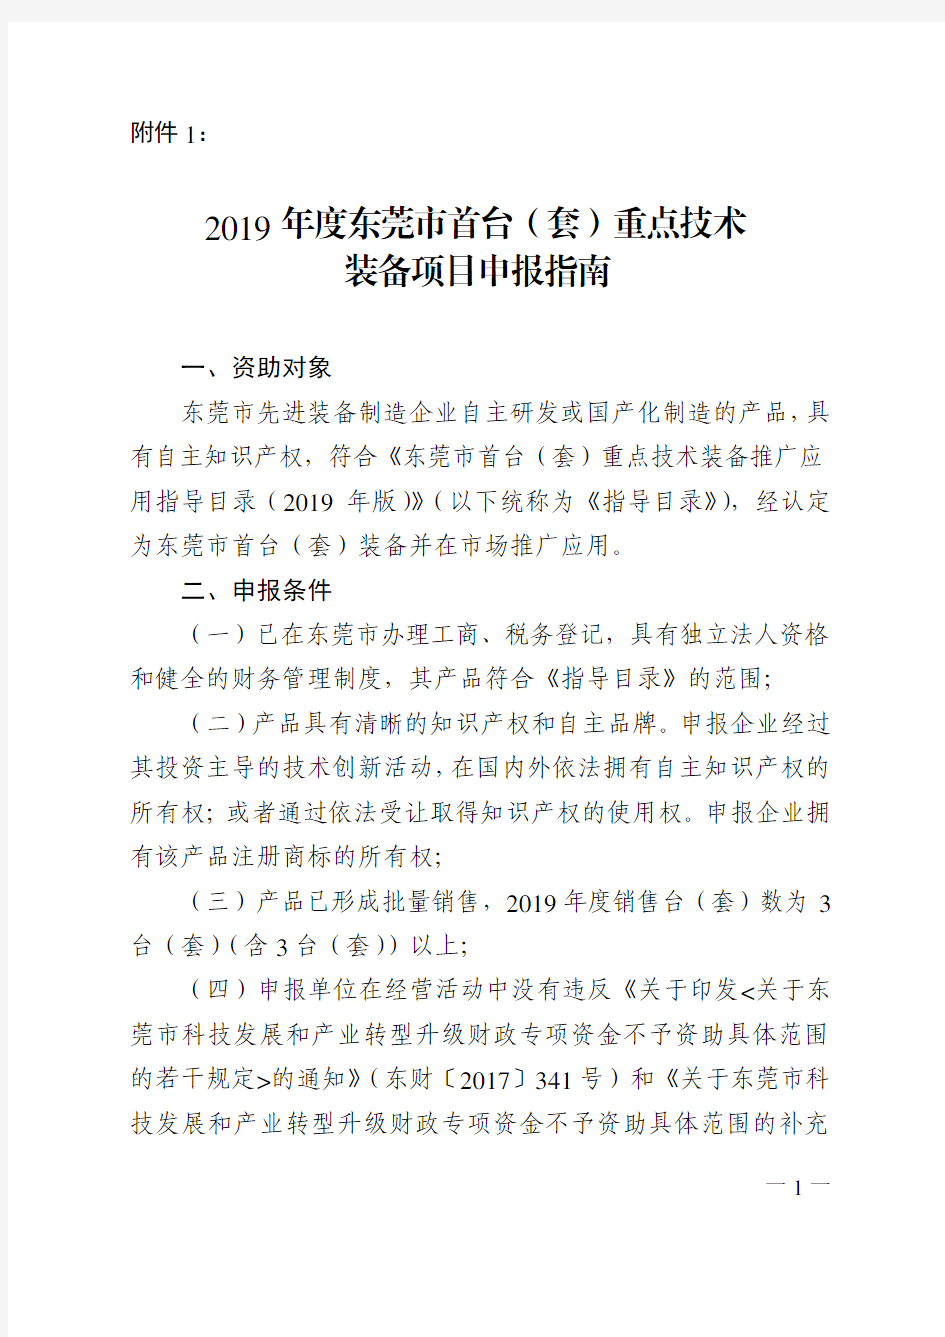 2019年度东莞市首台(套)重点技术装备项目申报指南